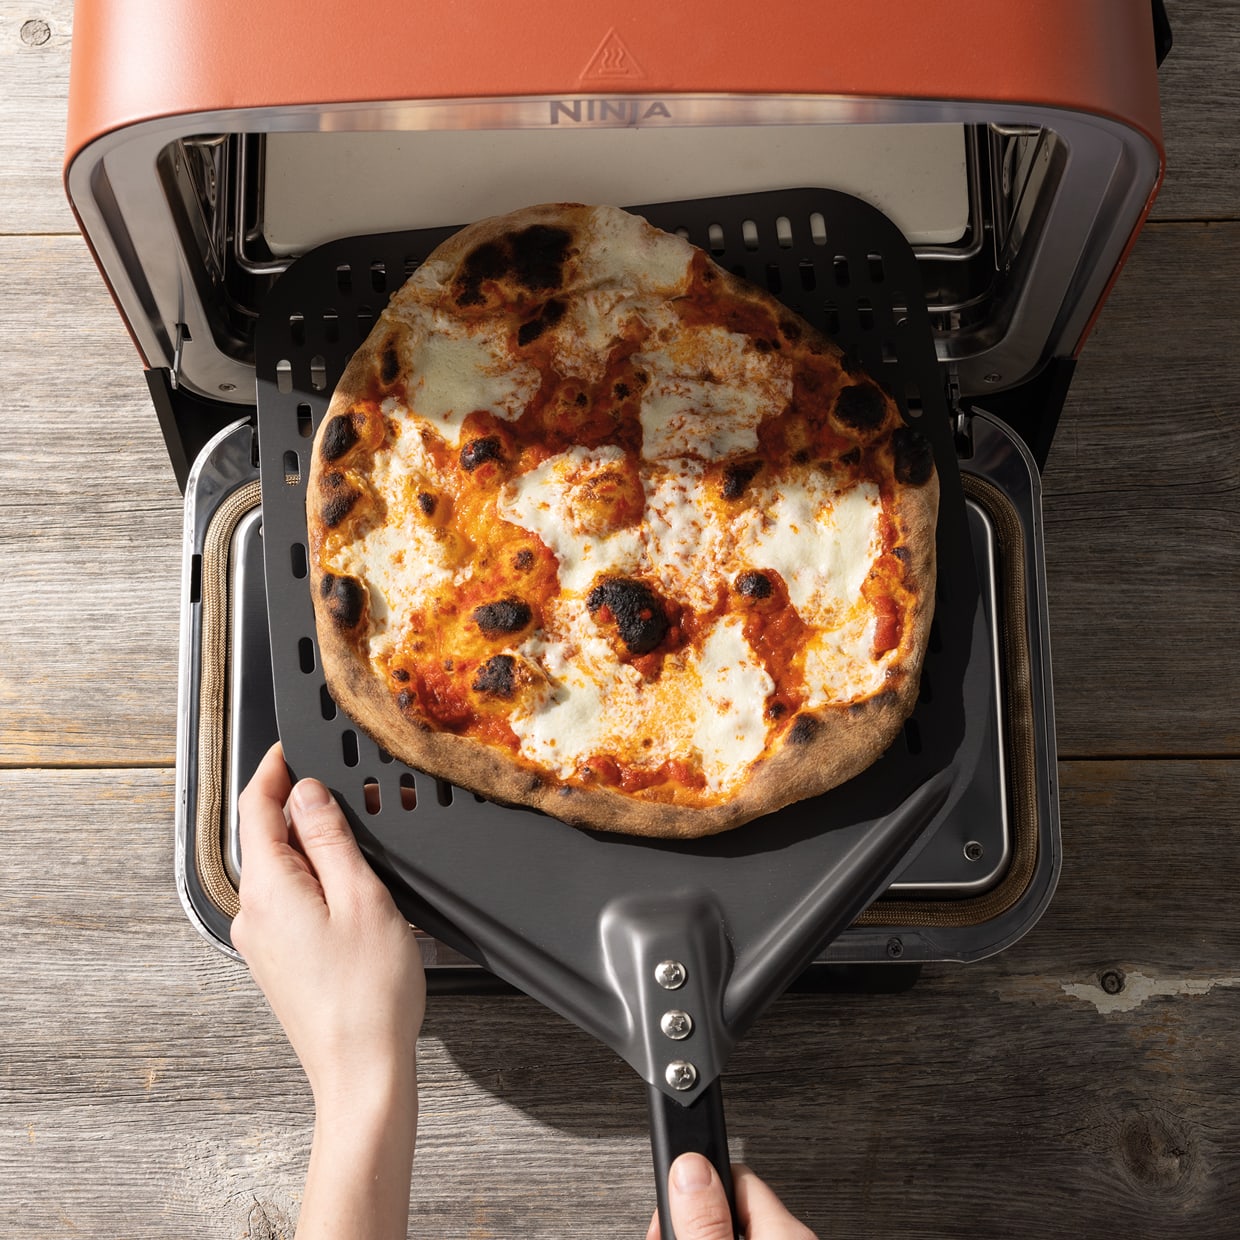 Ninja Woodfire™ 8-in-1 Outdoor Pizza Oven